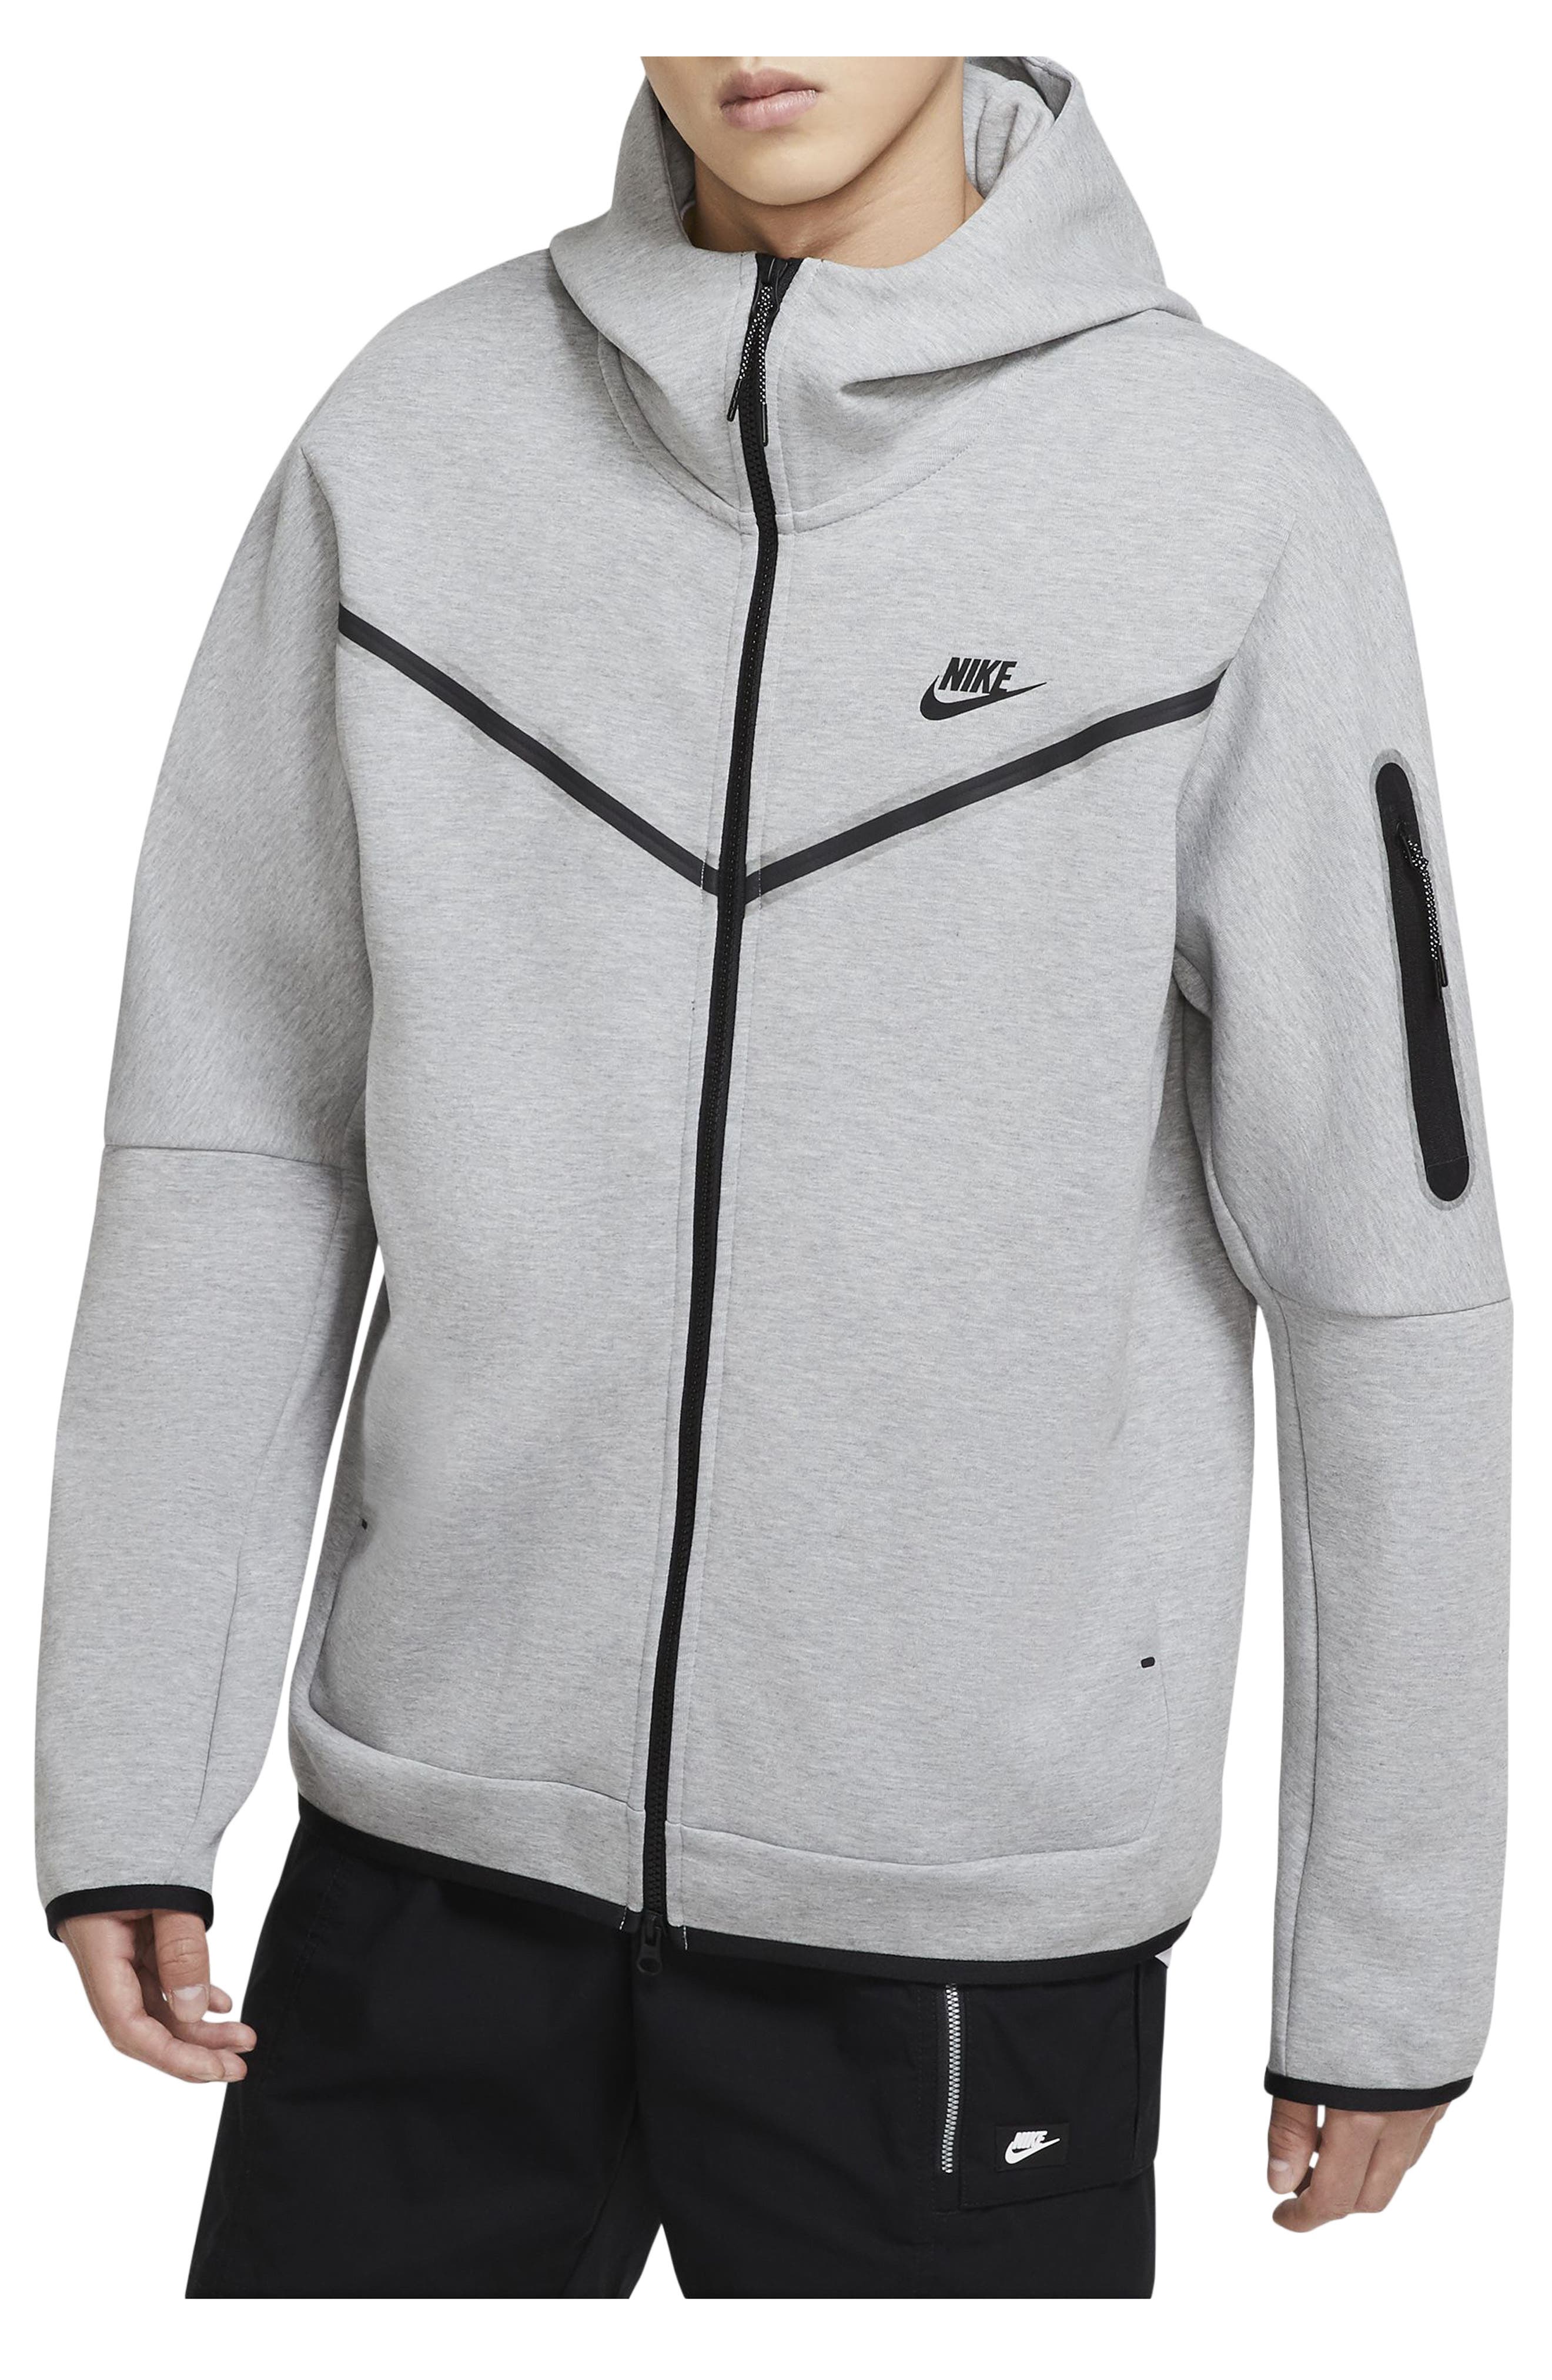 grey nike zip up hoodie mens